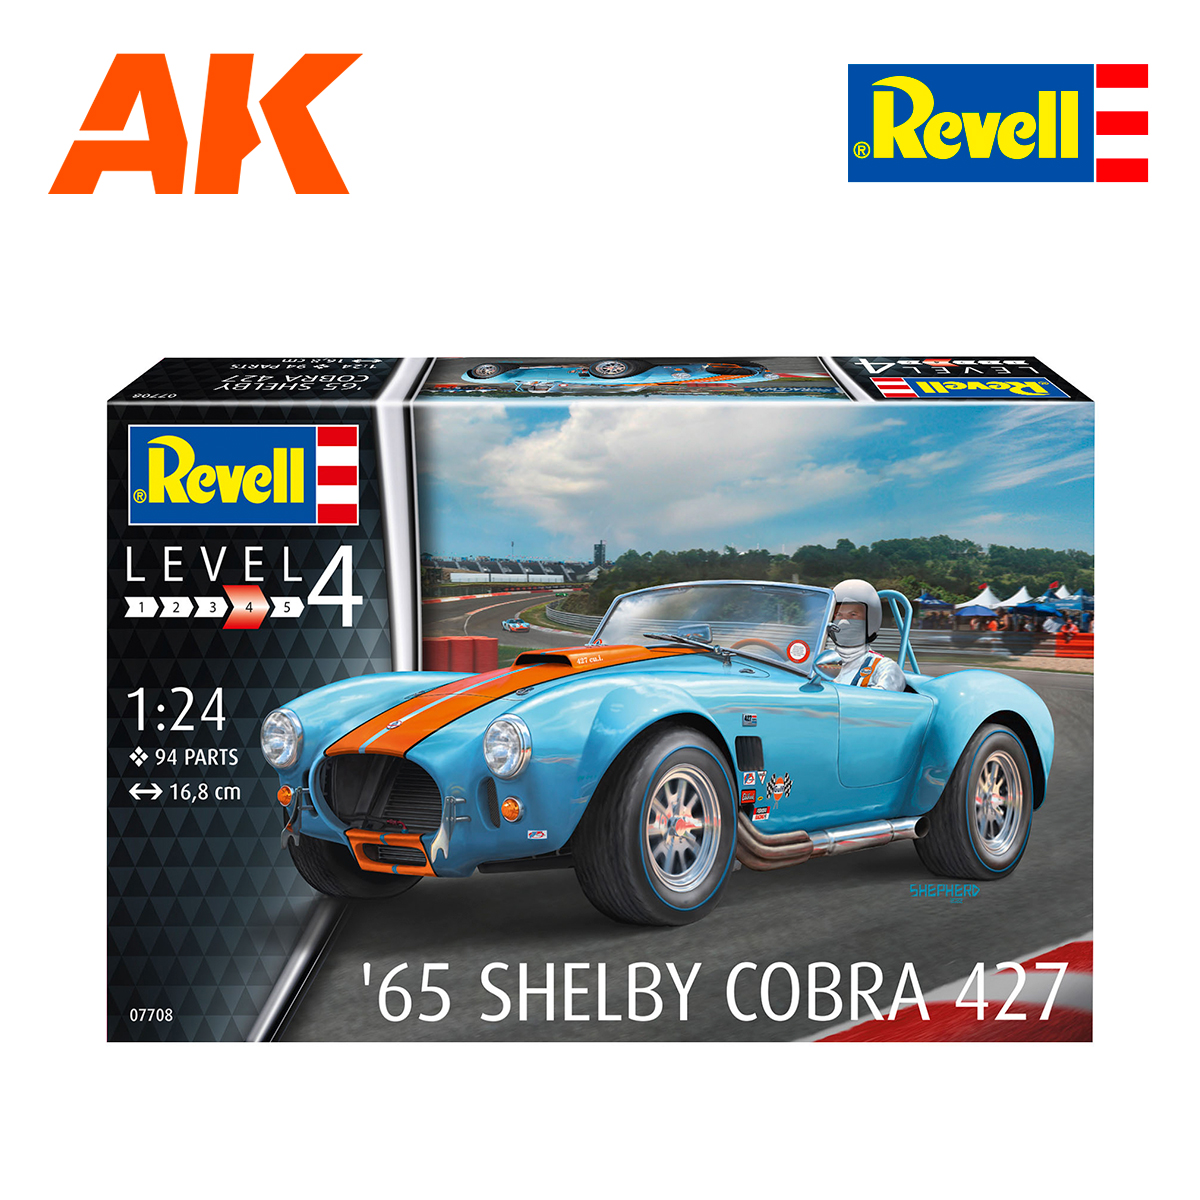 Buy 1965 Shelby Cobra 427 1/24 online for 32,95€